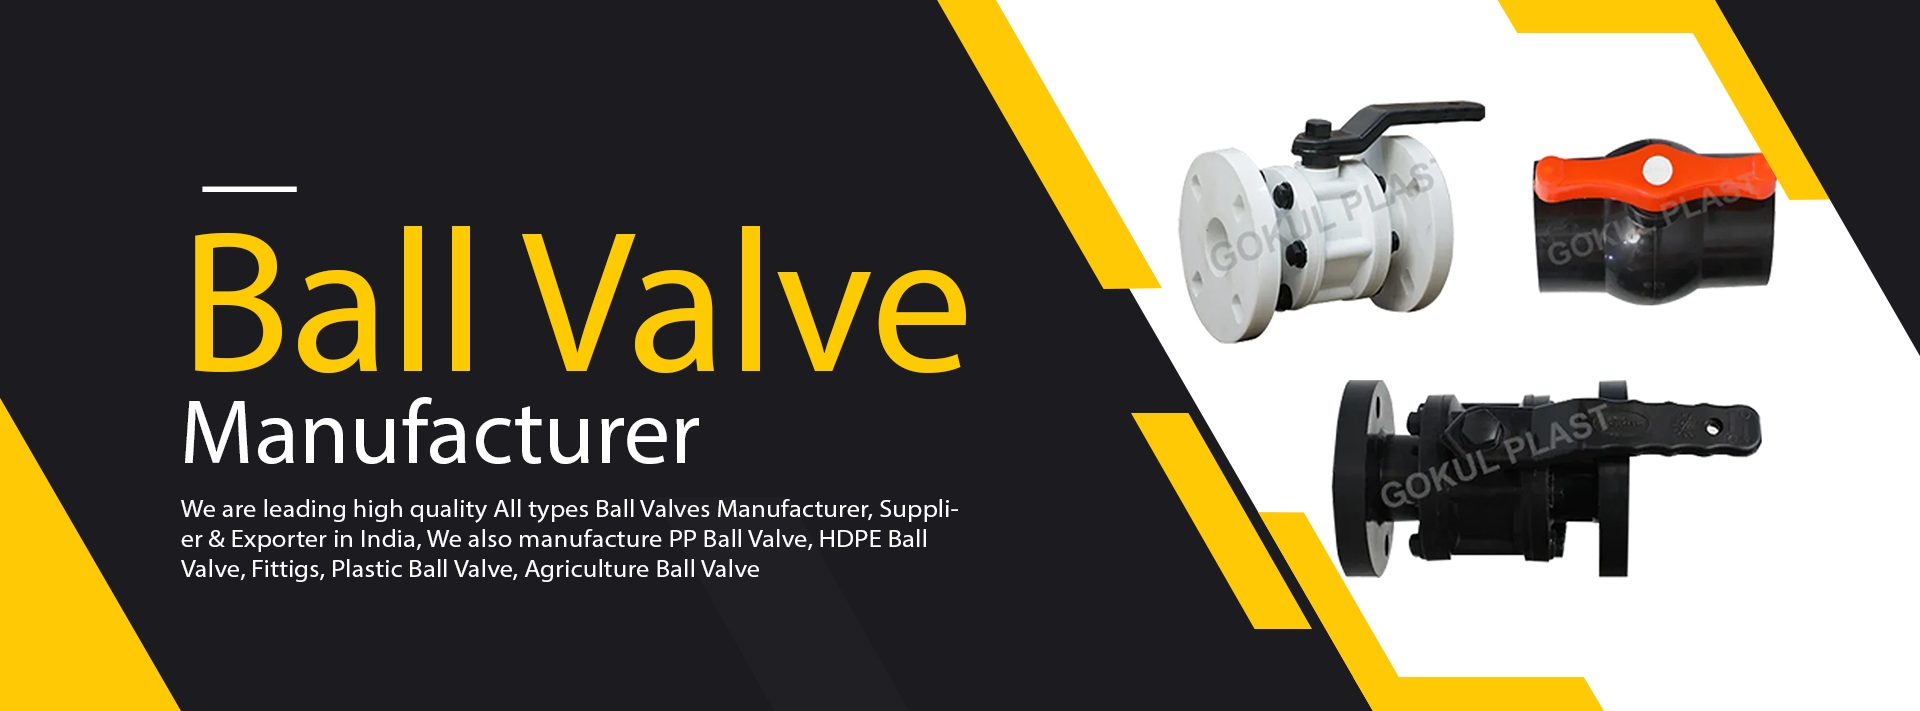 Ball Valve Supplier & Exporter in  India